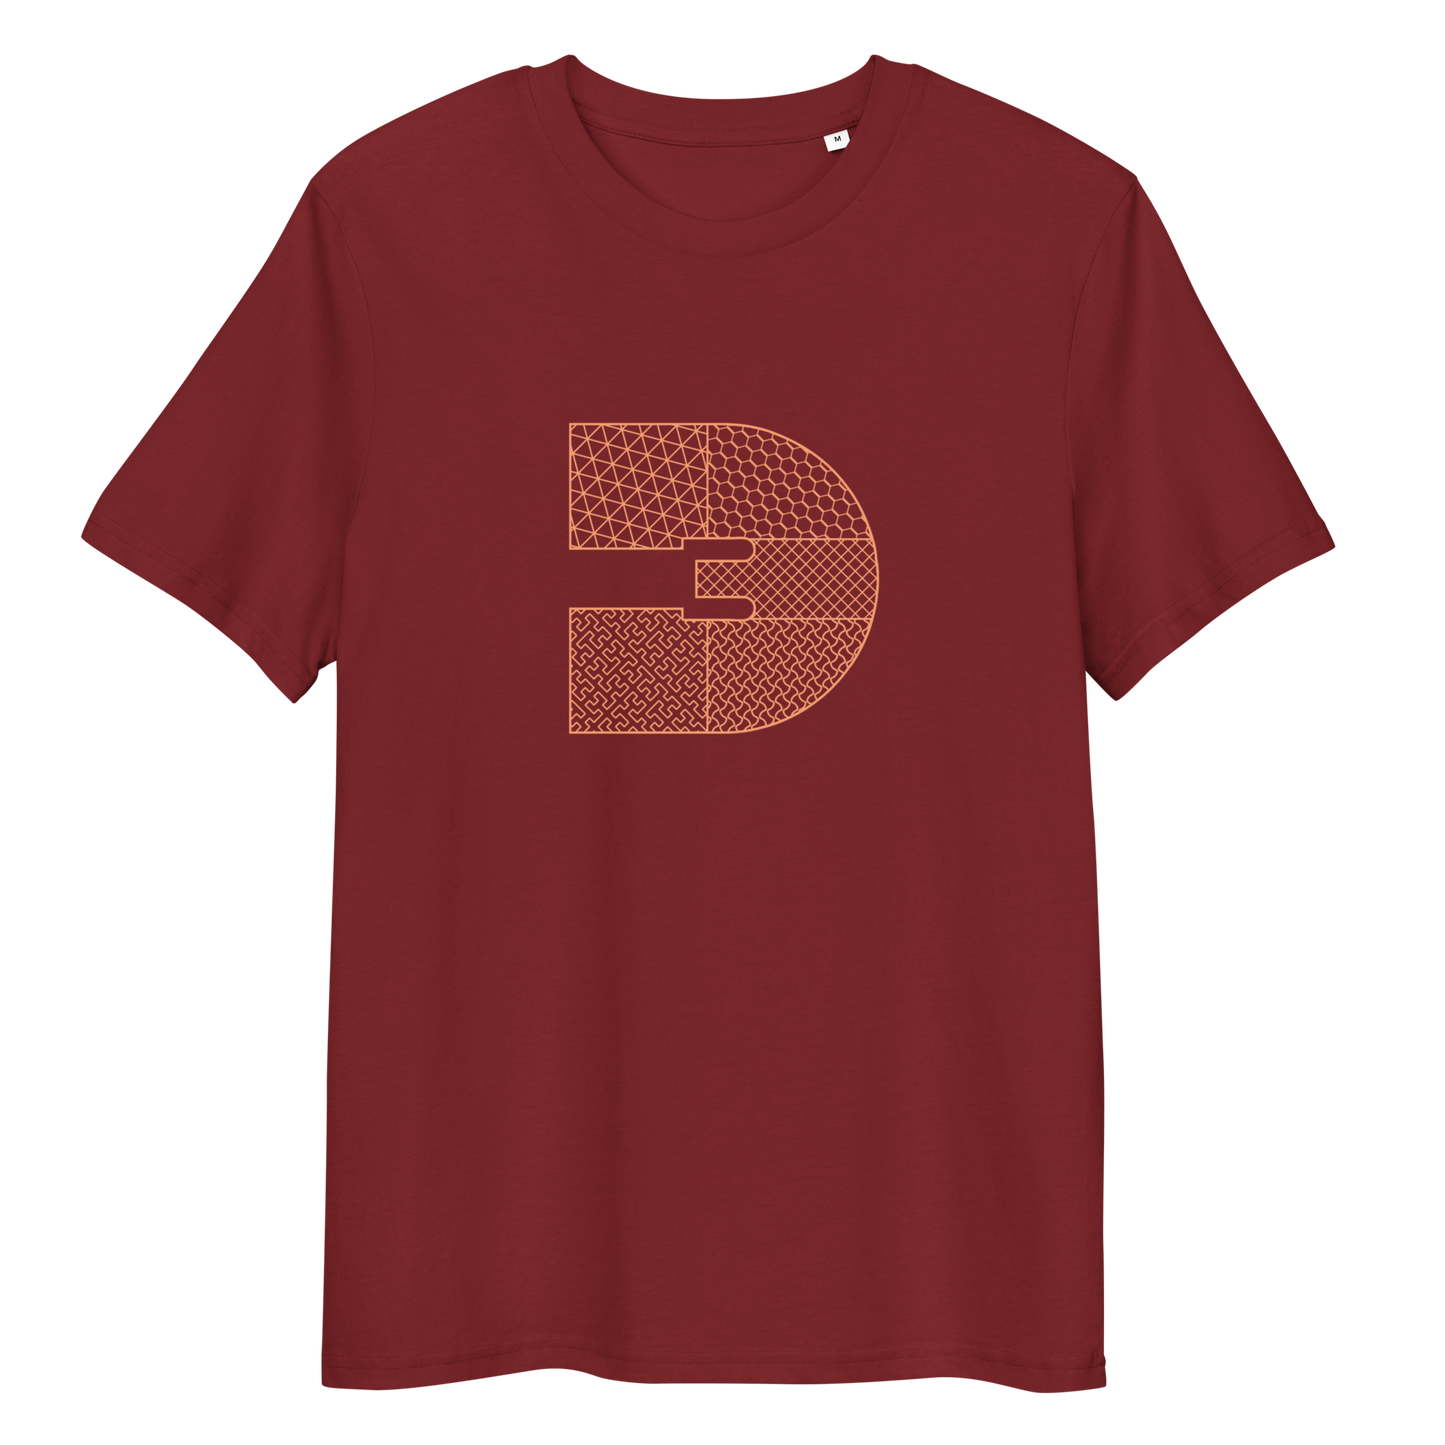 Infilled 3D Rev Logo (Organic cotton t-shirt)